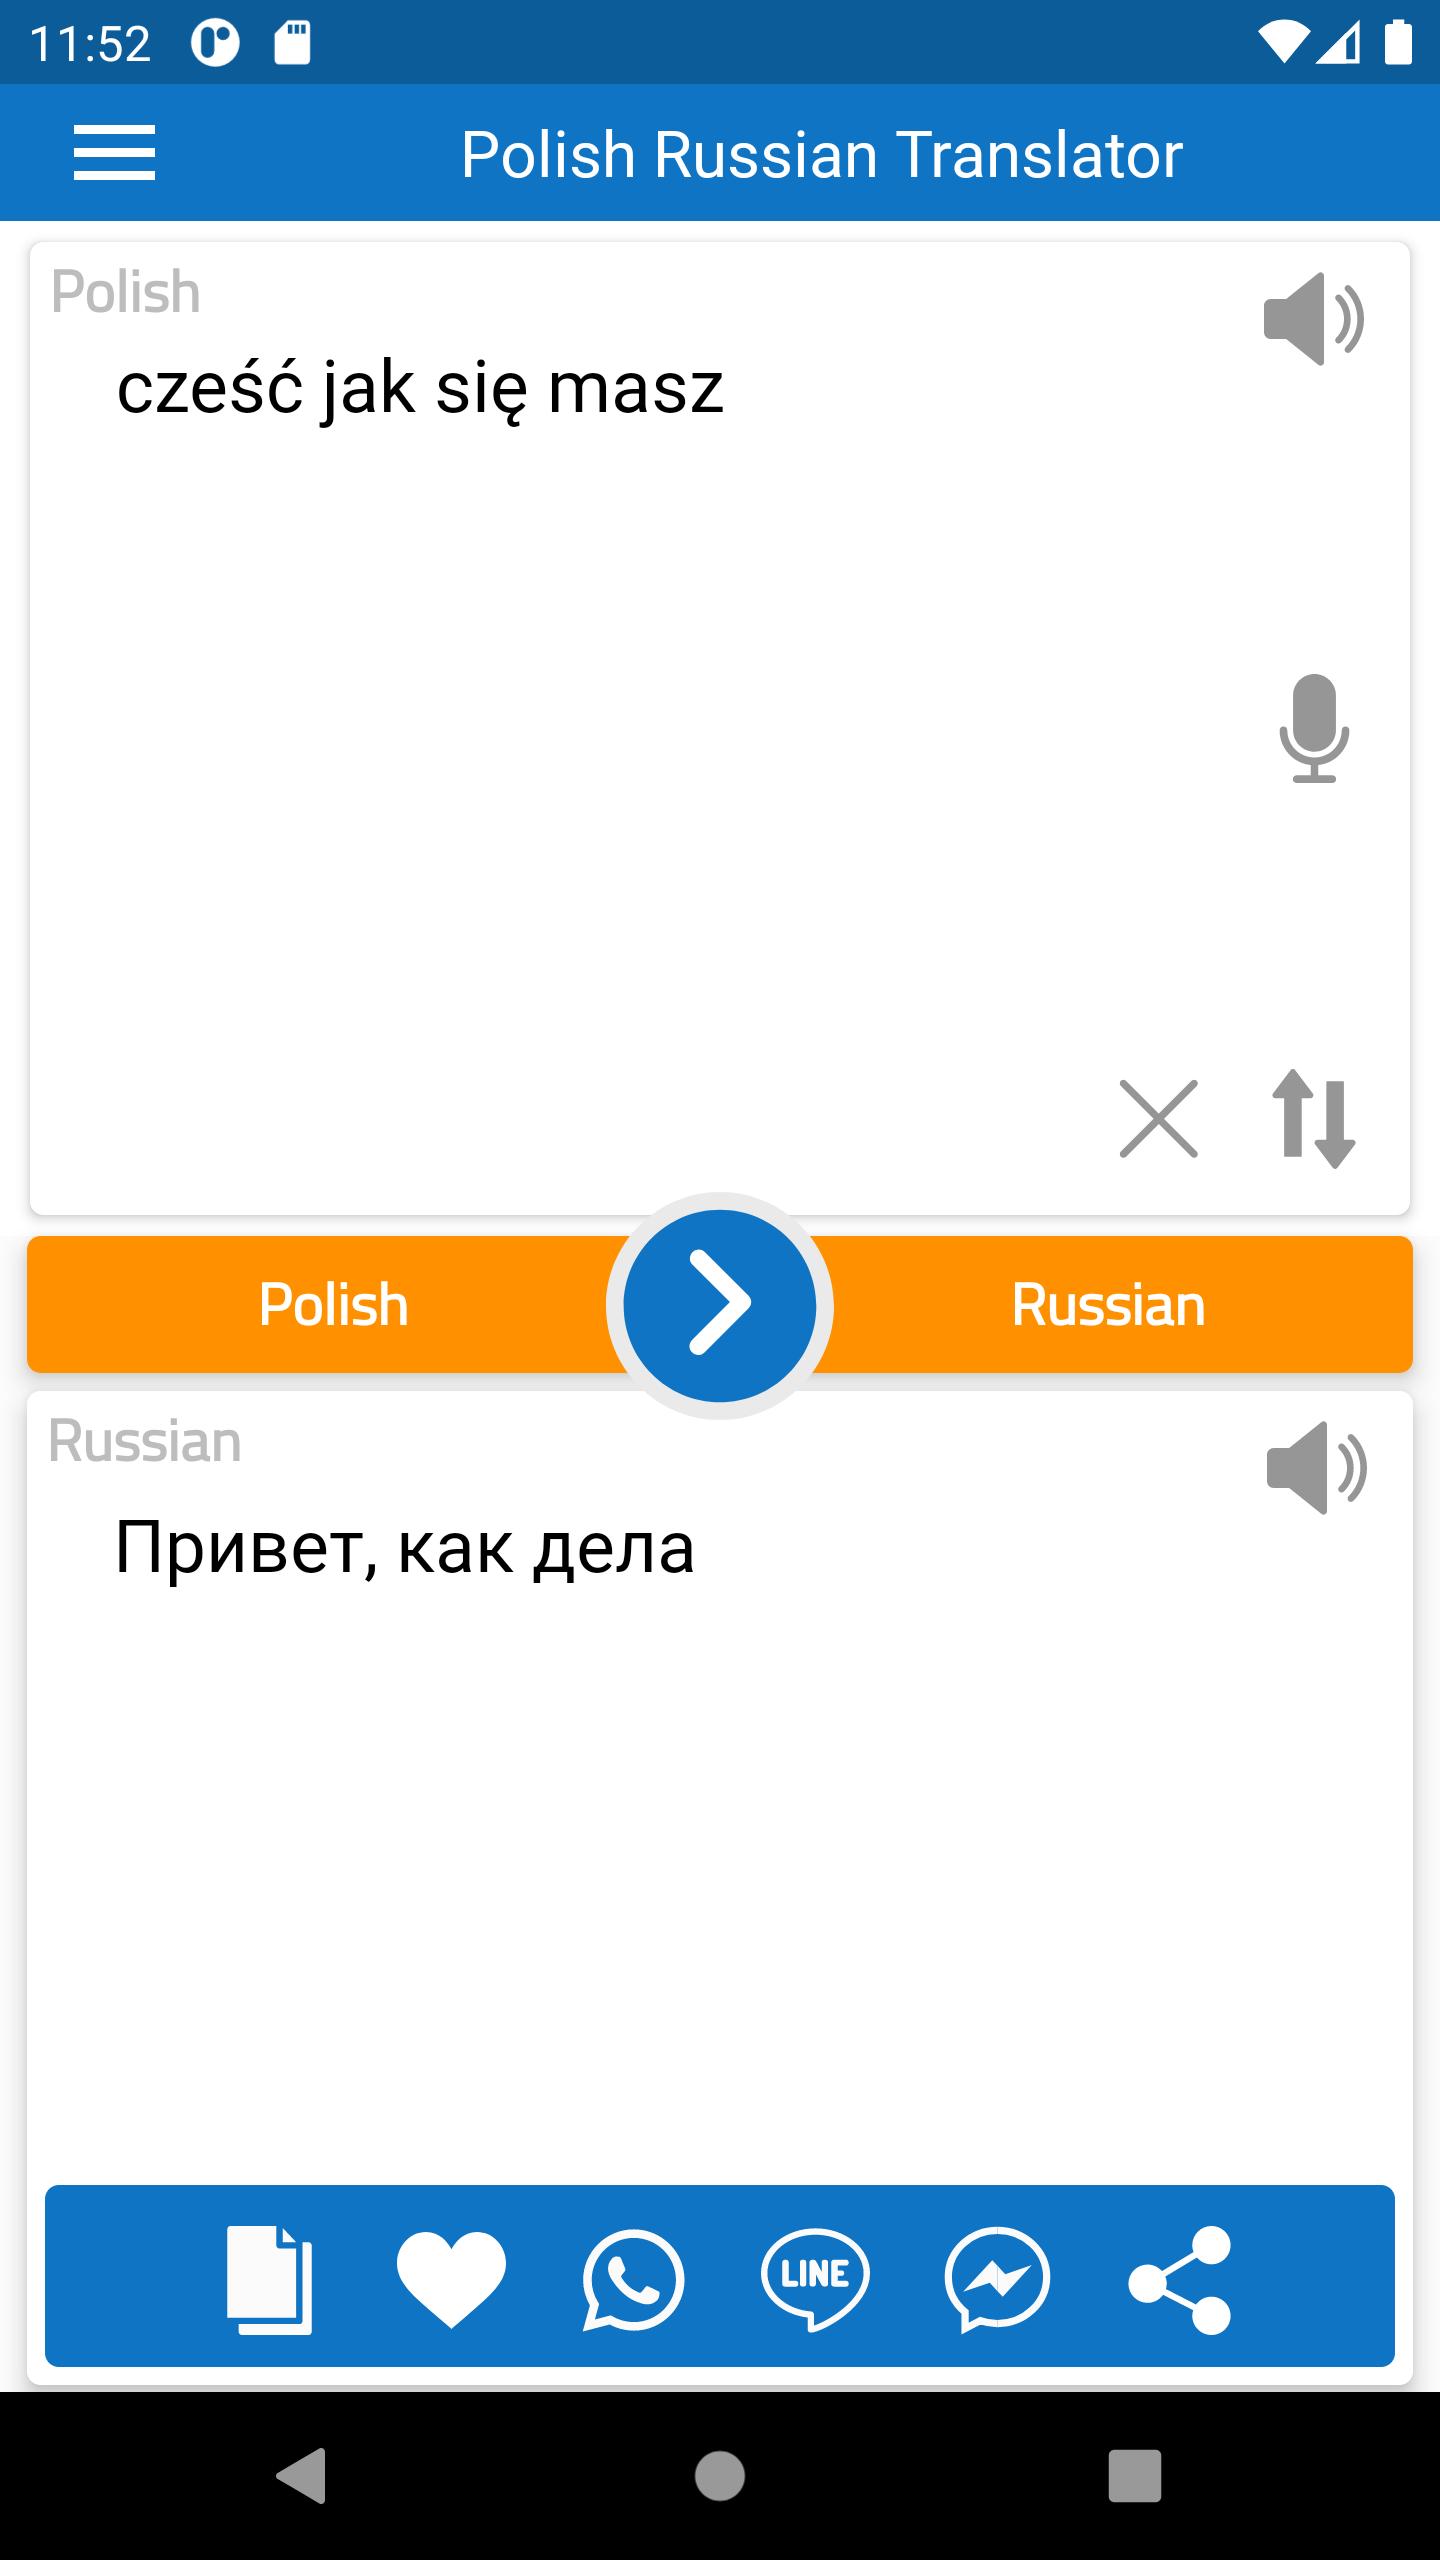 Polsko Rosyjski Darmowy Tłumacz for Android - APK Download